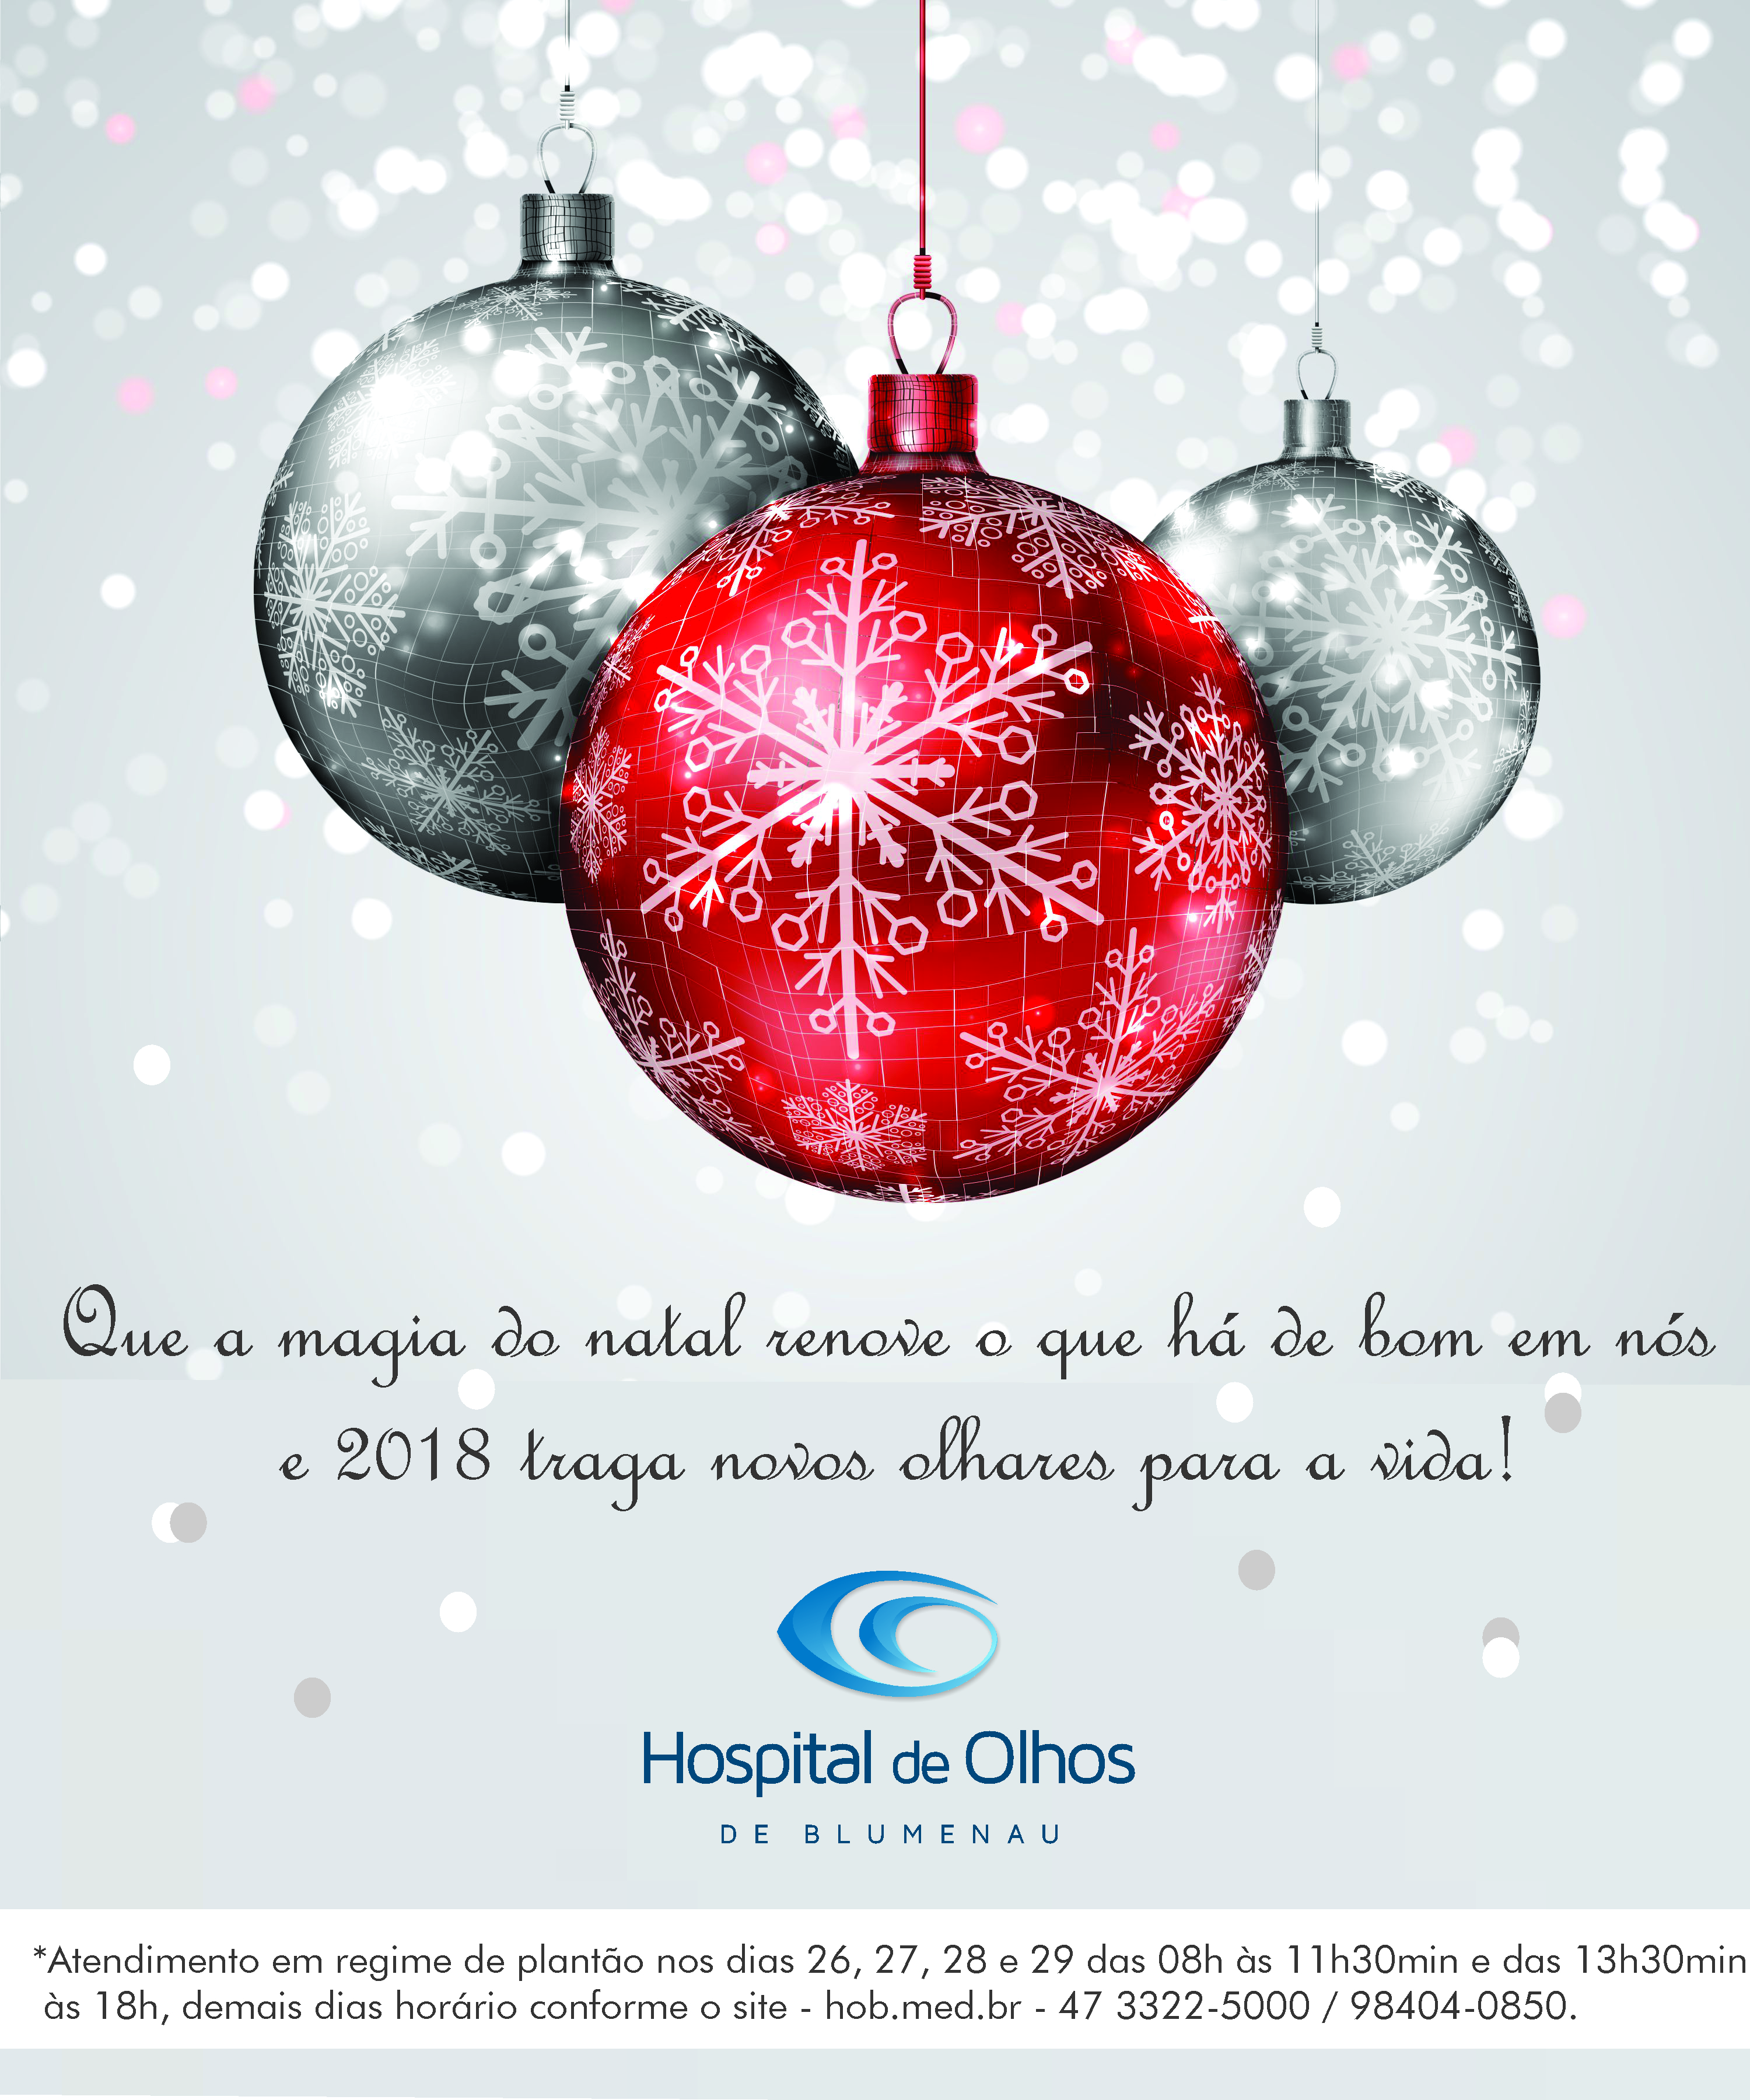 HOB – Hospital de Olhos de Blumenau | Feliz Natal e um próspero Ano Novo!